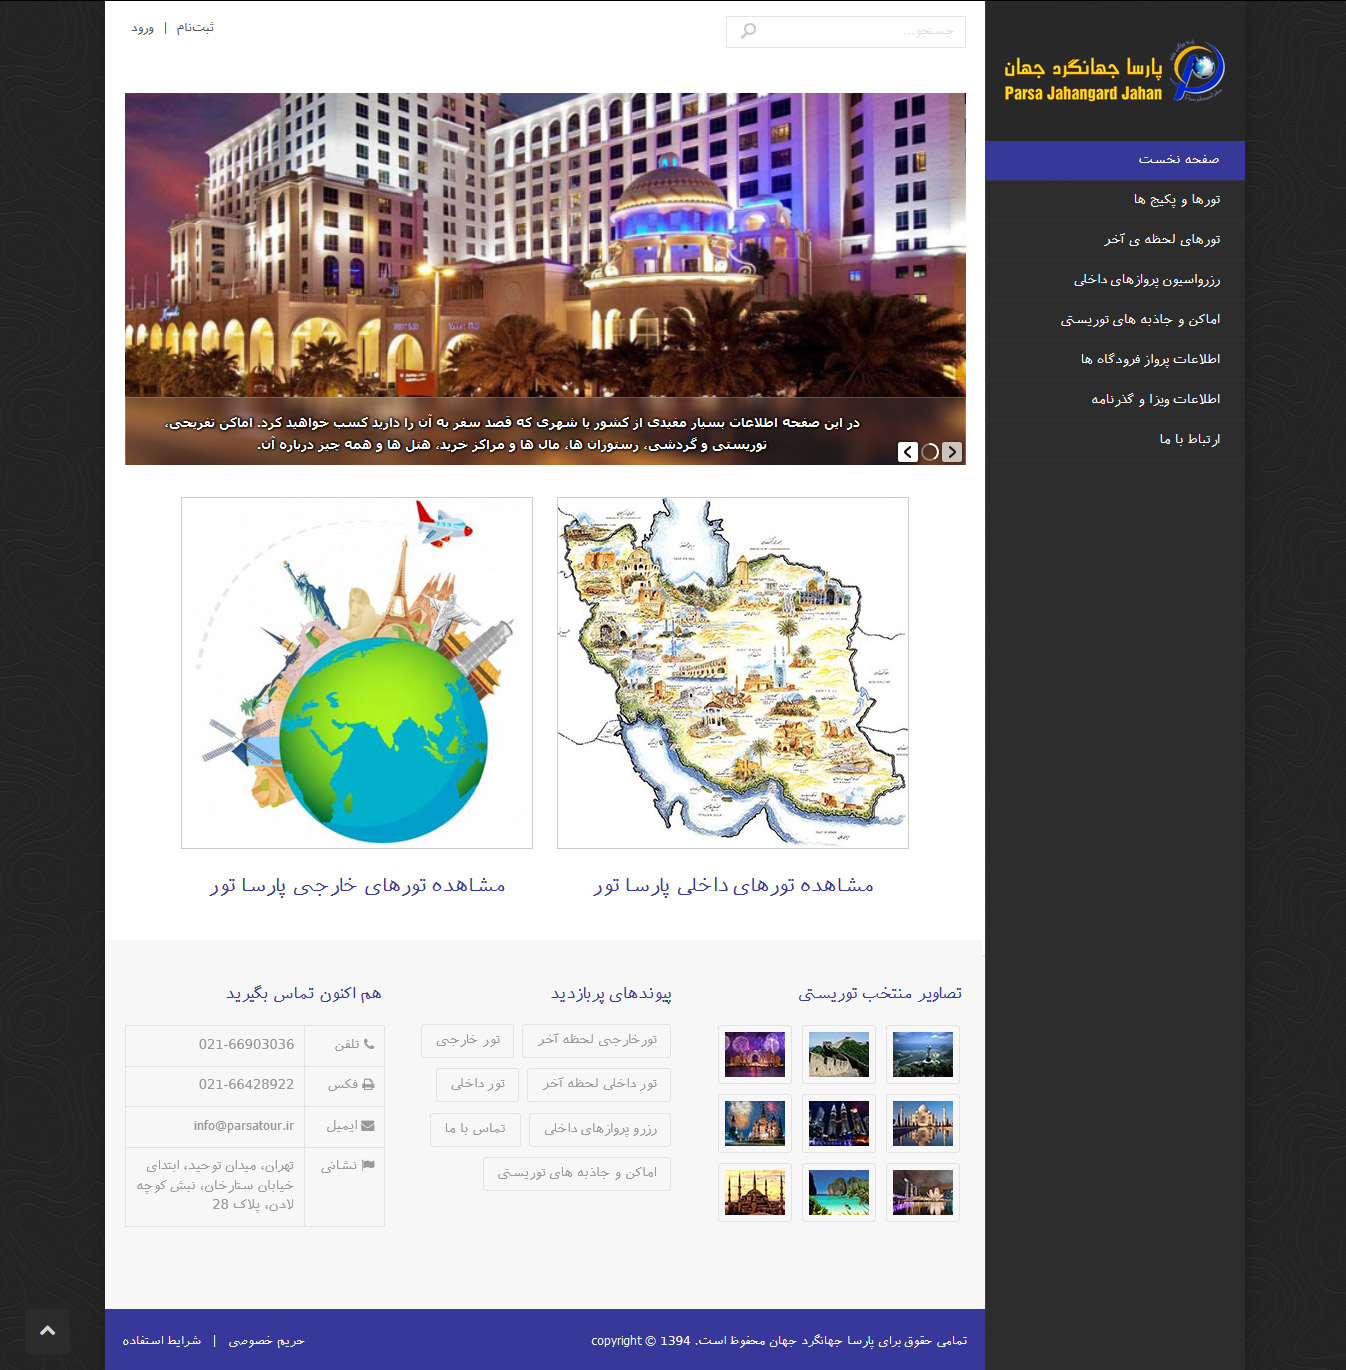 تصویری از صفحه نخست وب‌سایت موسسه توریستی و مسافرتی پارسا جهانگرد جهان در سال 2014